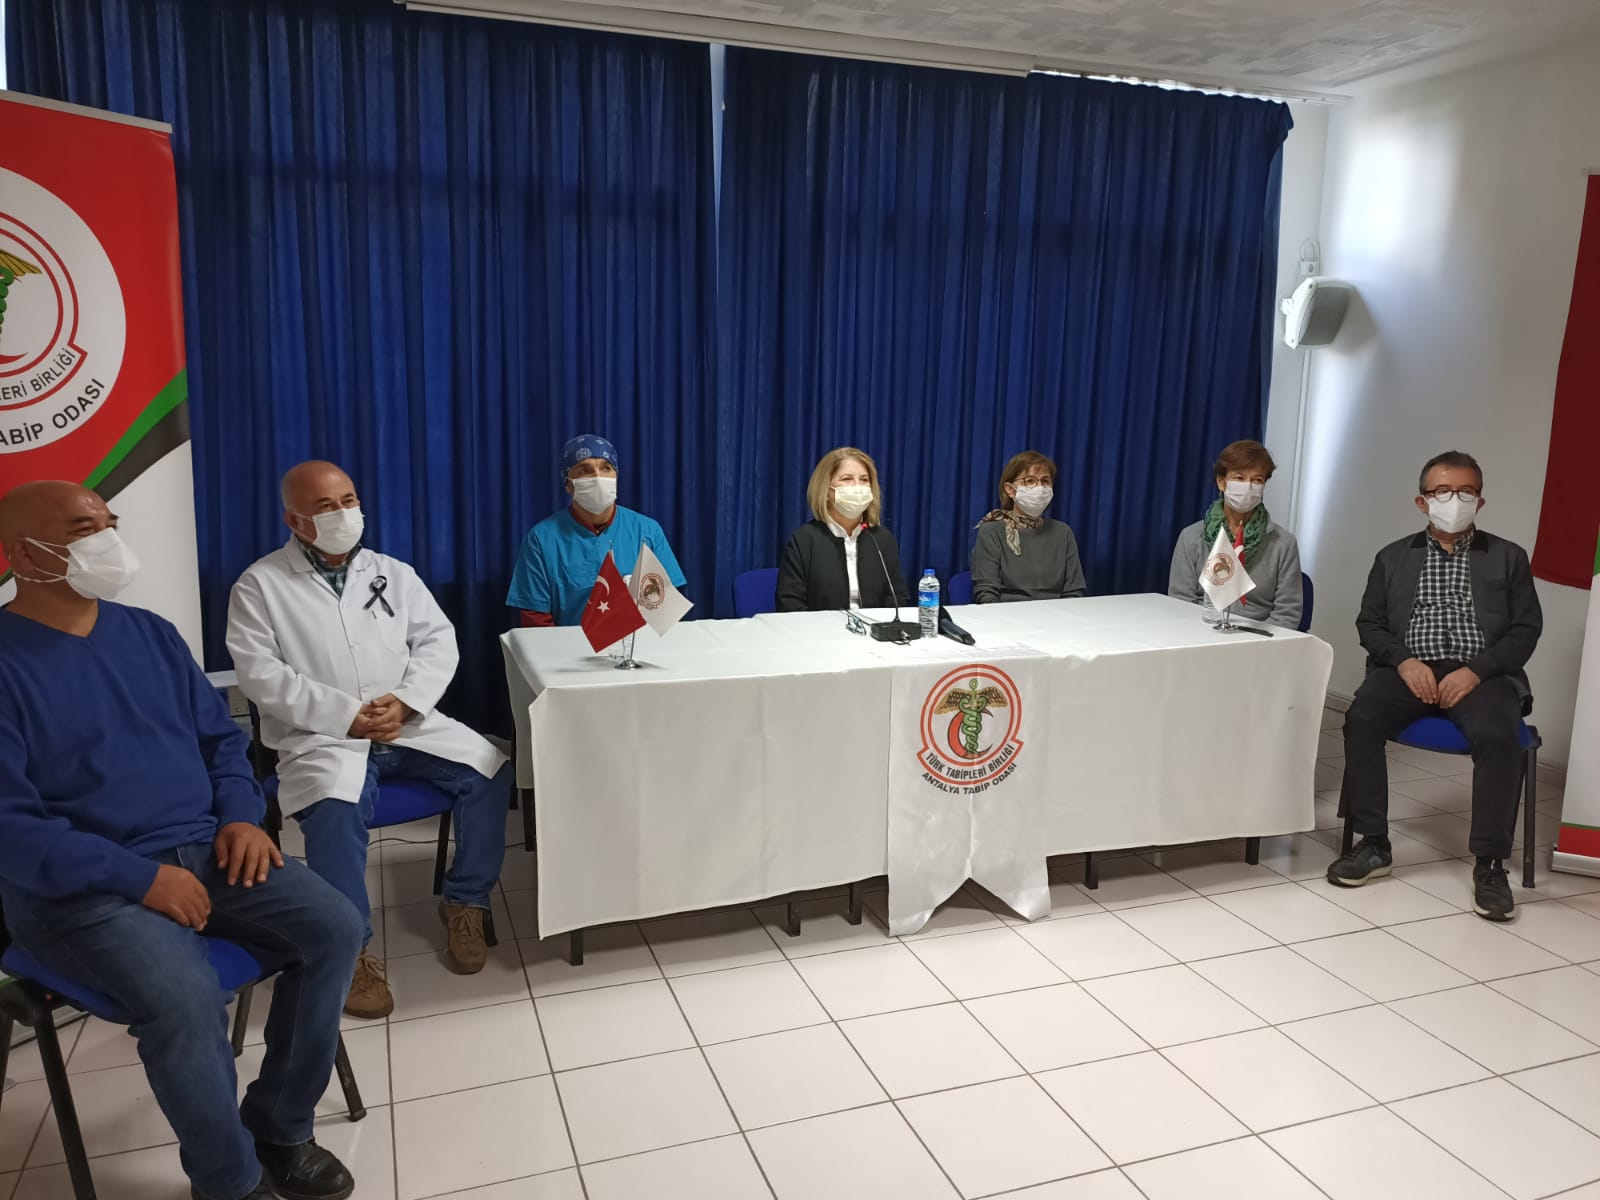 Şubemiz ve Tabip Odası Antalya’da Pandeminin Seyrine Dikkat Çekerek, Çözüm Önerilerini Sundu